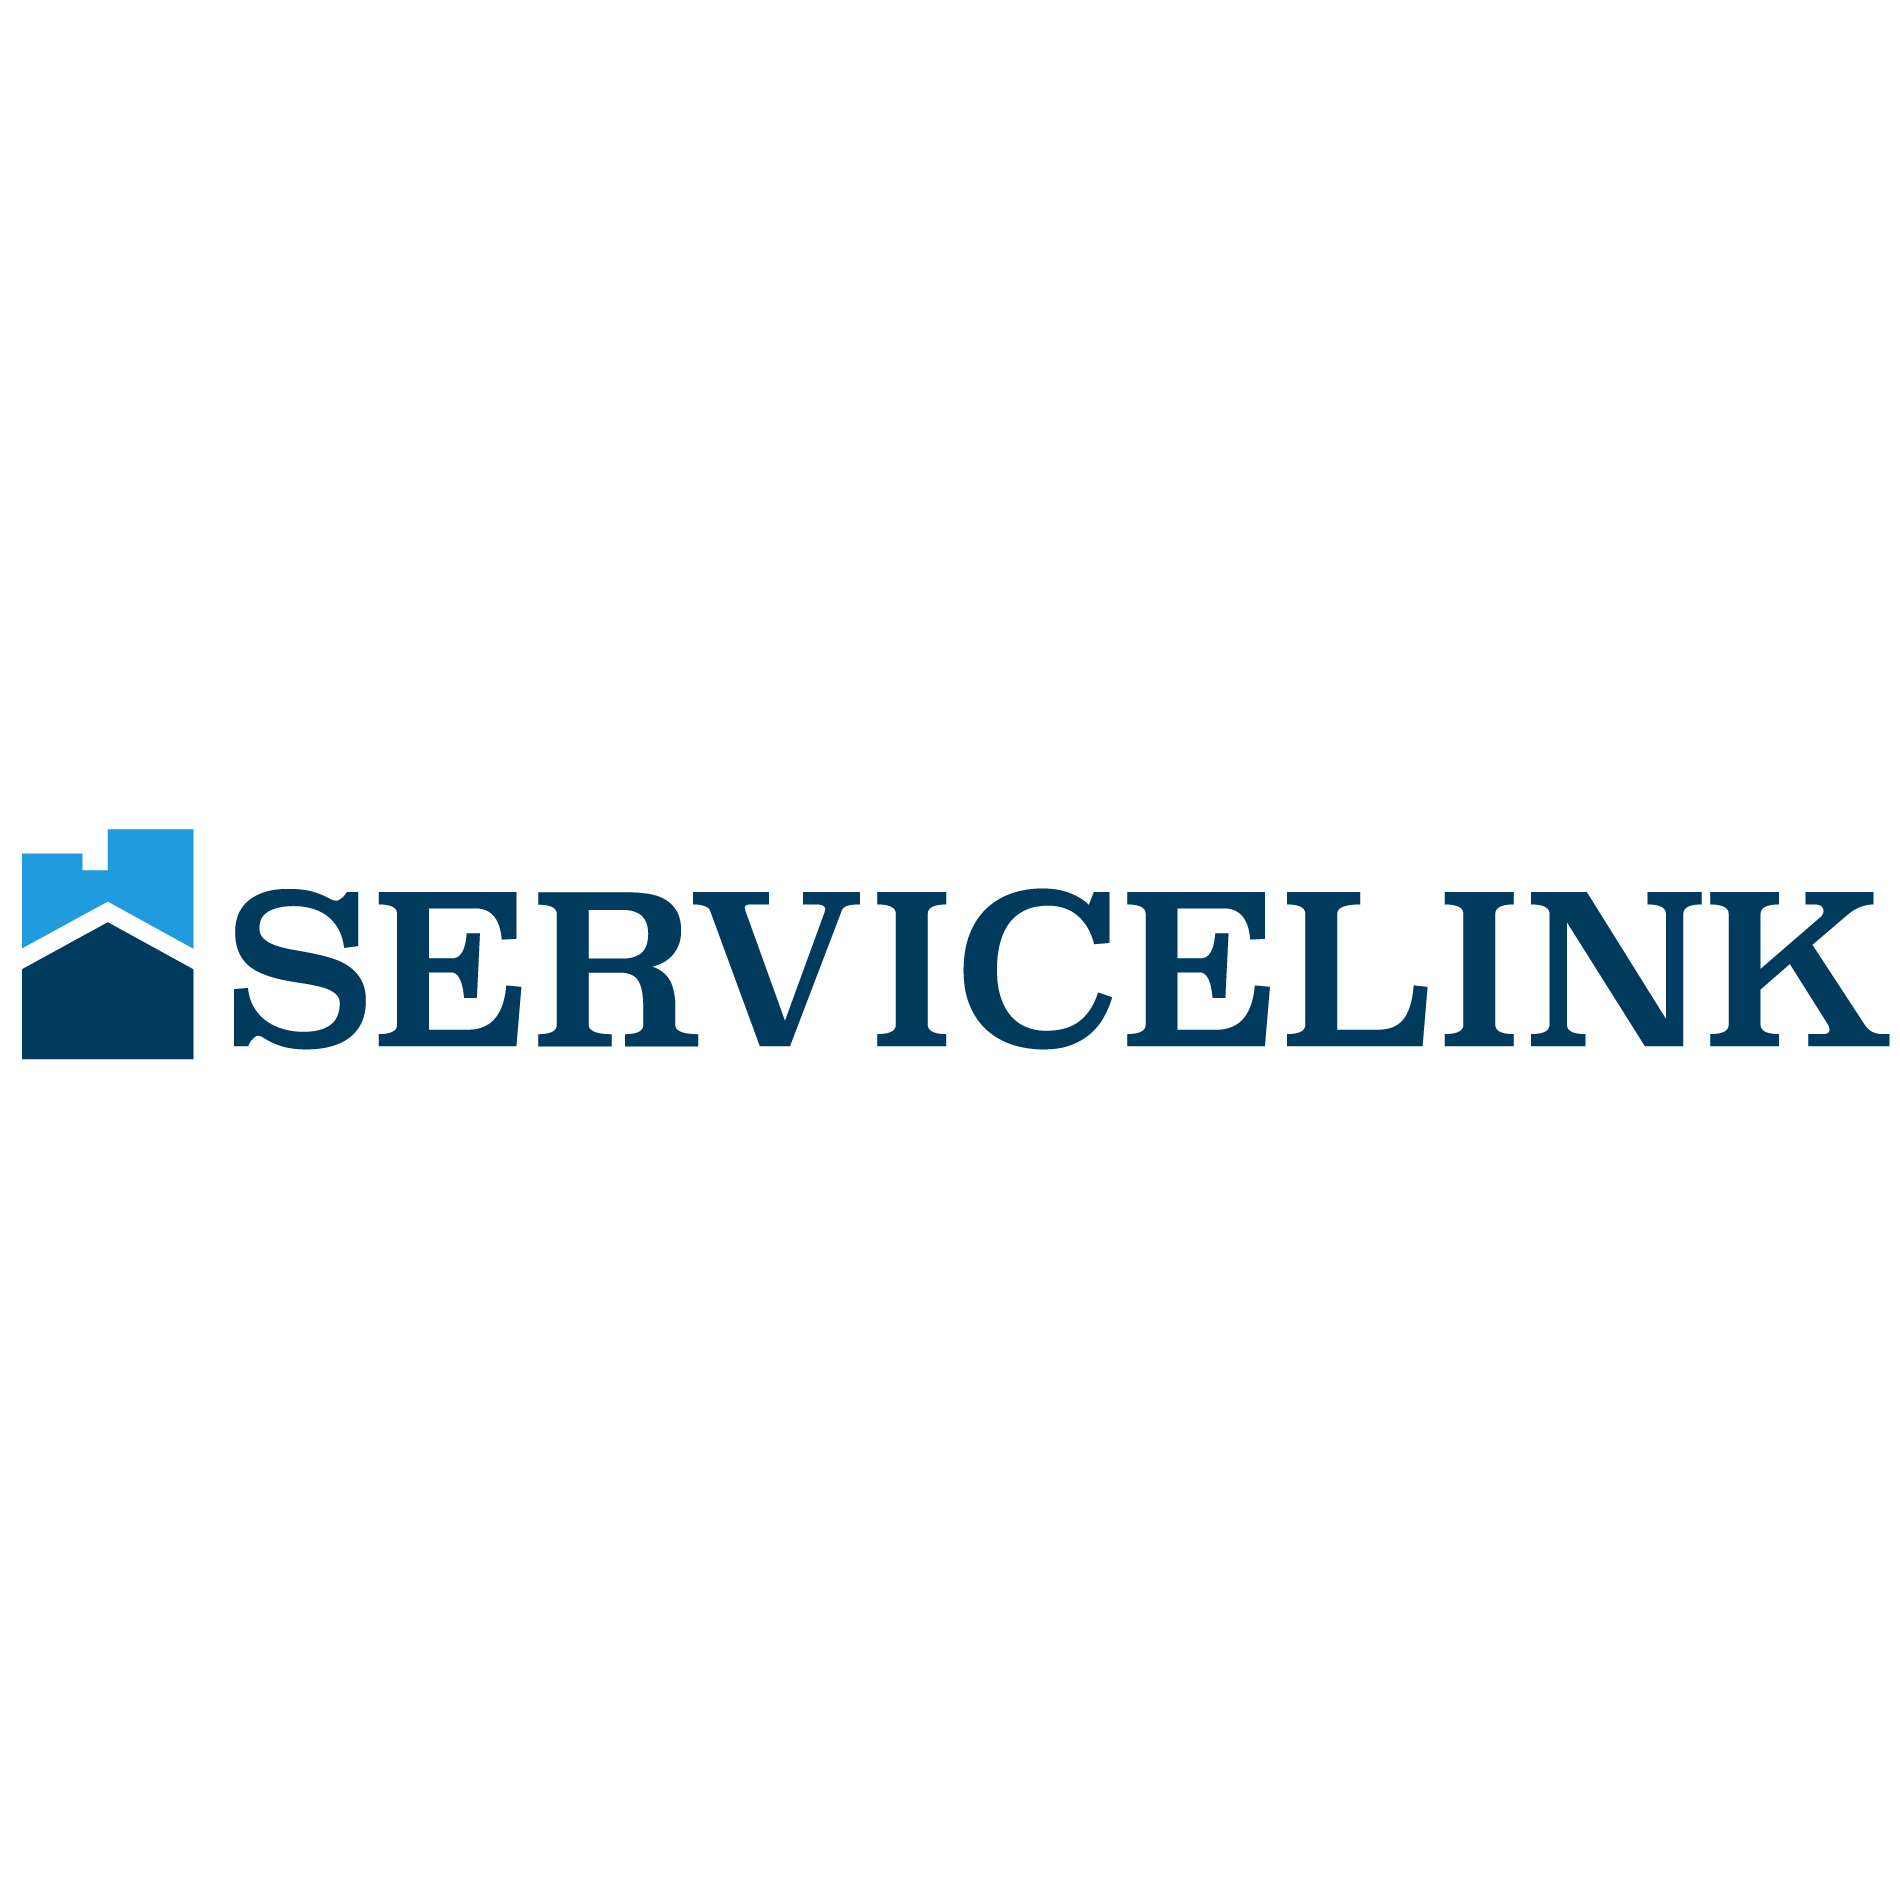 ServiceLink_Logo_10_02_17_0.png